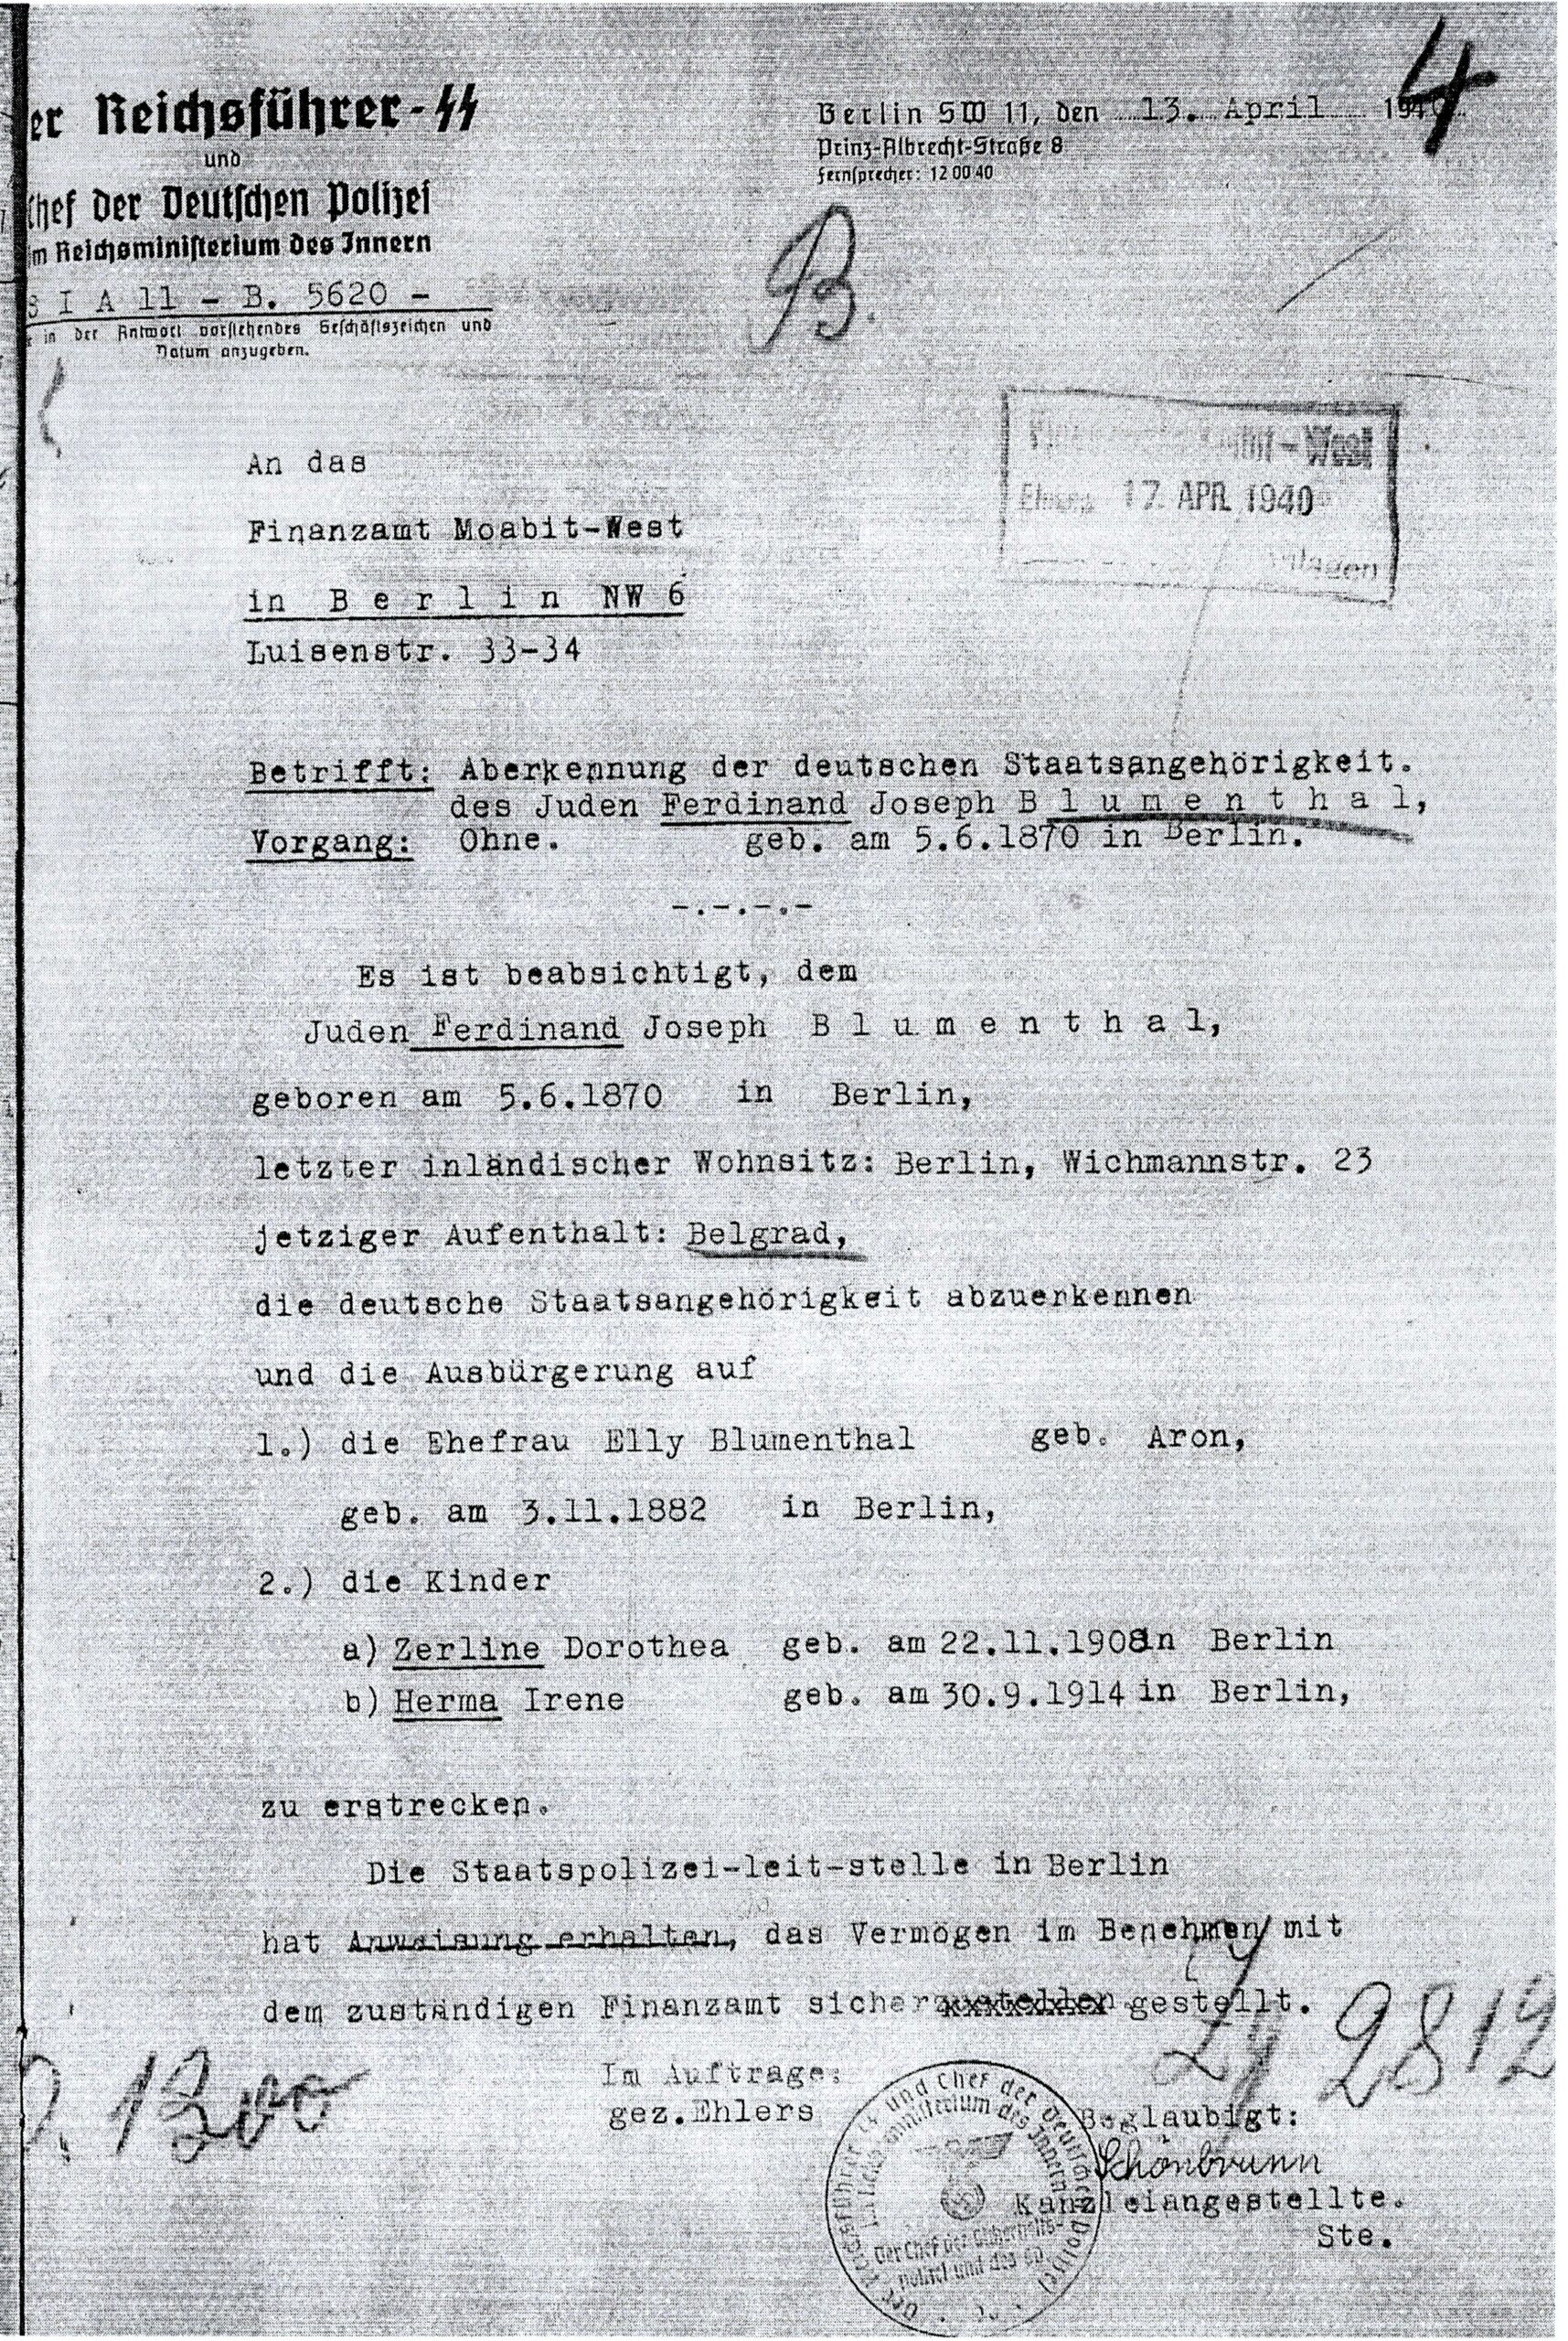 Aberkennung der Deutschen Staatsbürgerschaft, April 1940, Brandenburgisches Landeshauptarchiv, Potsdam